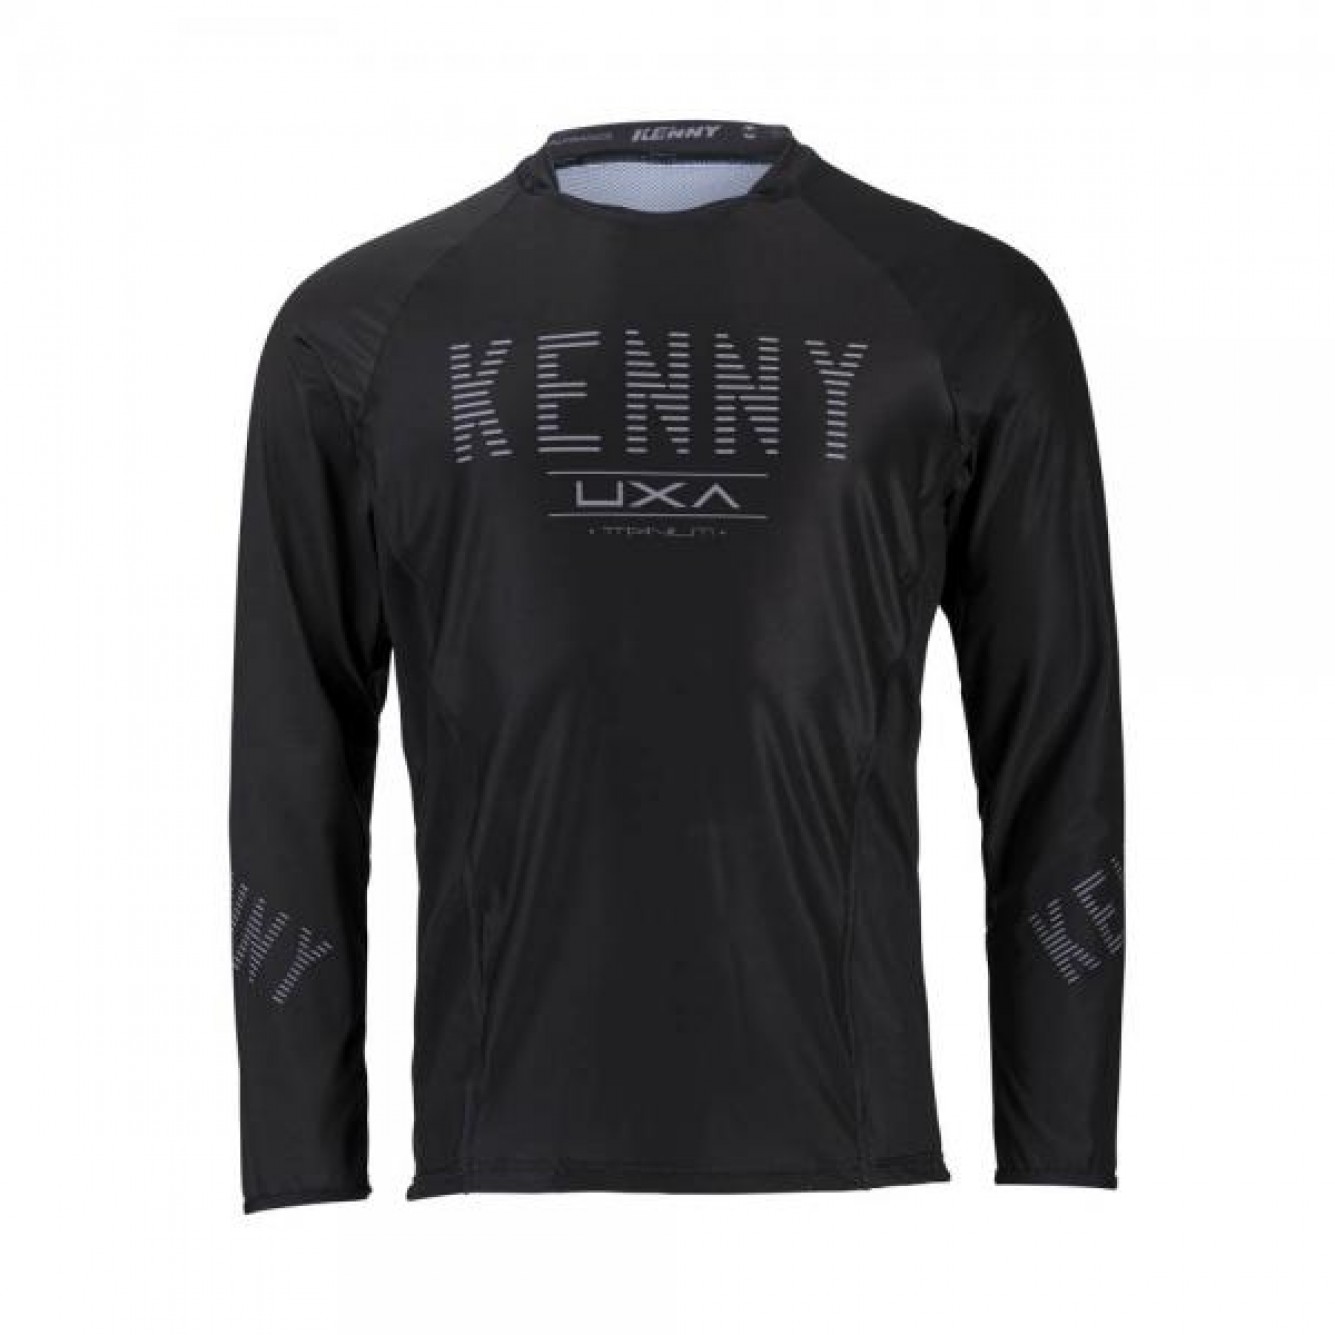 Kenny | Cross Shirt Titanium Zwart